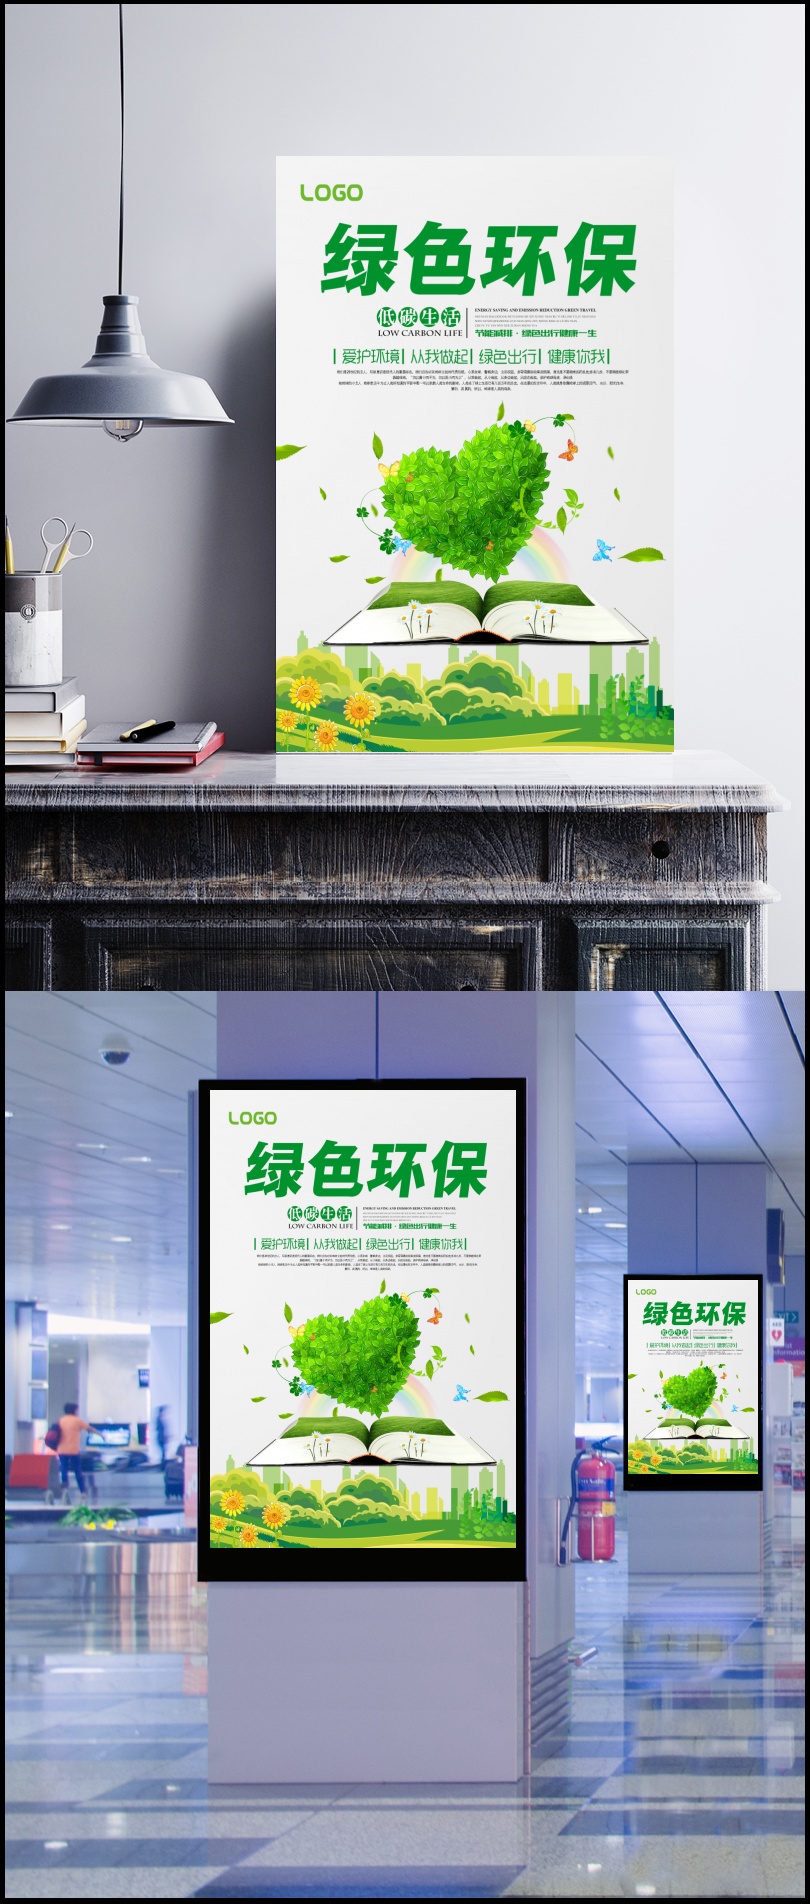 绿色节能环保海报